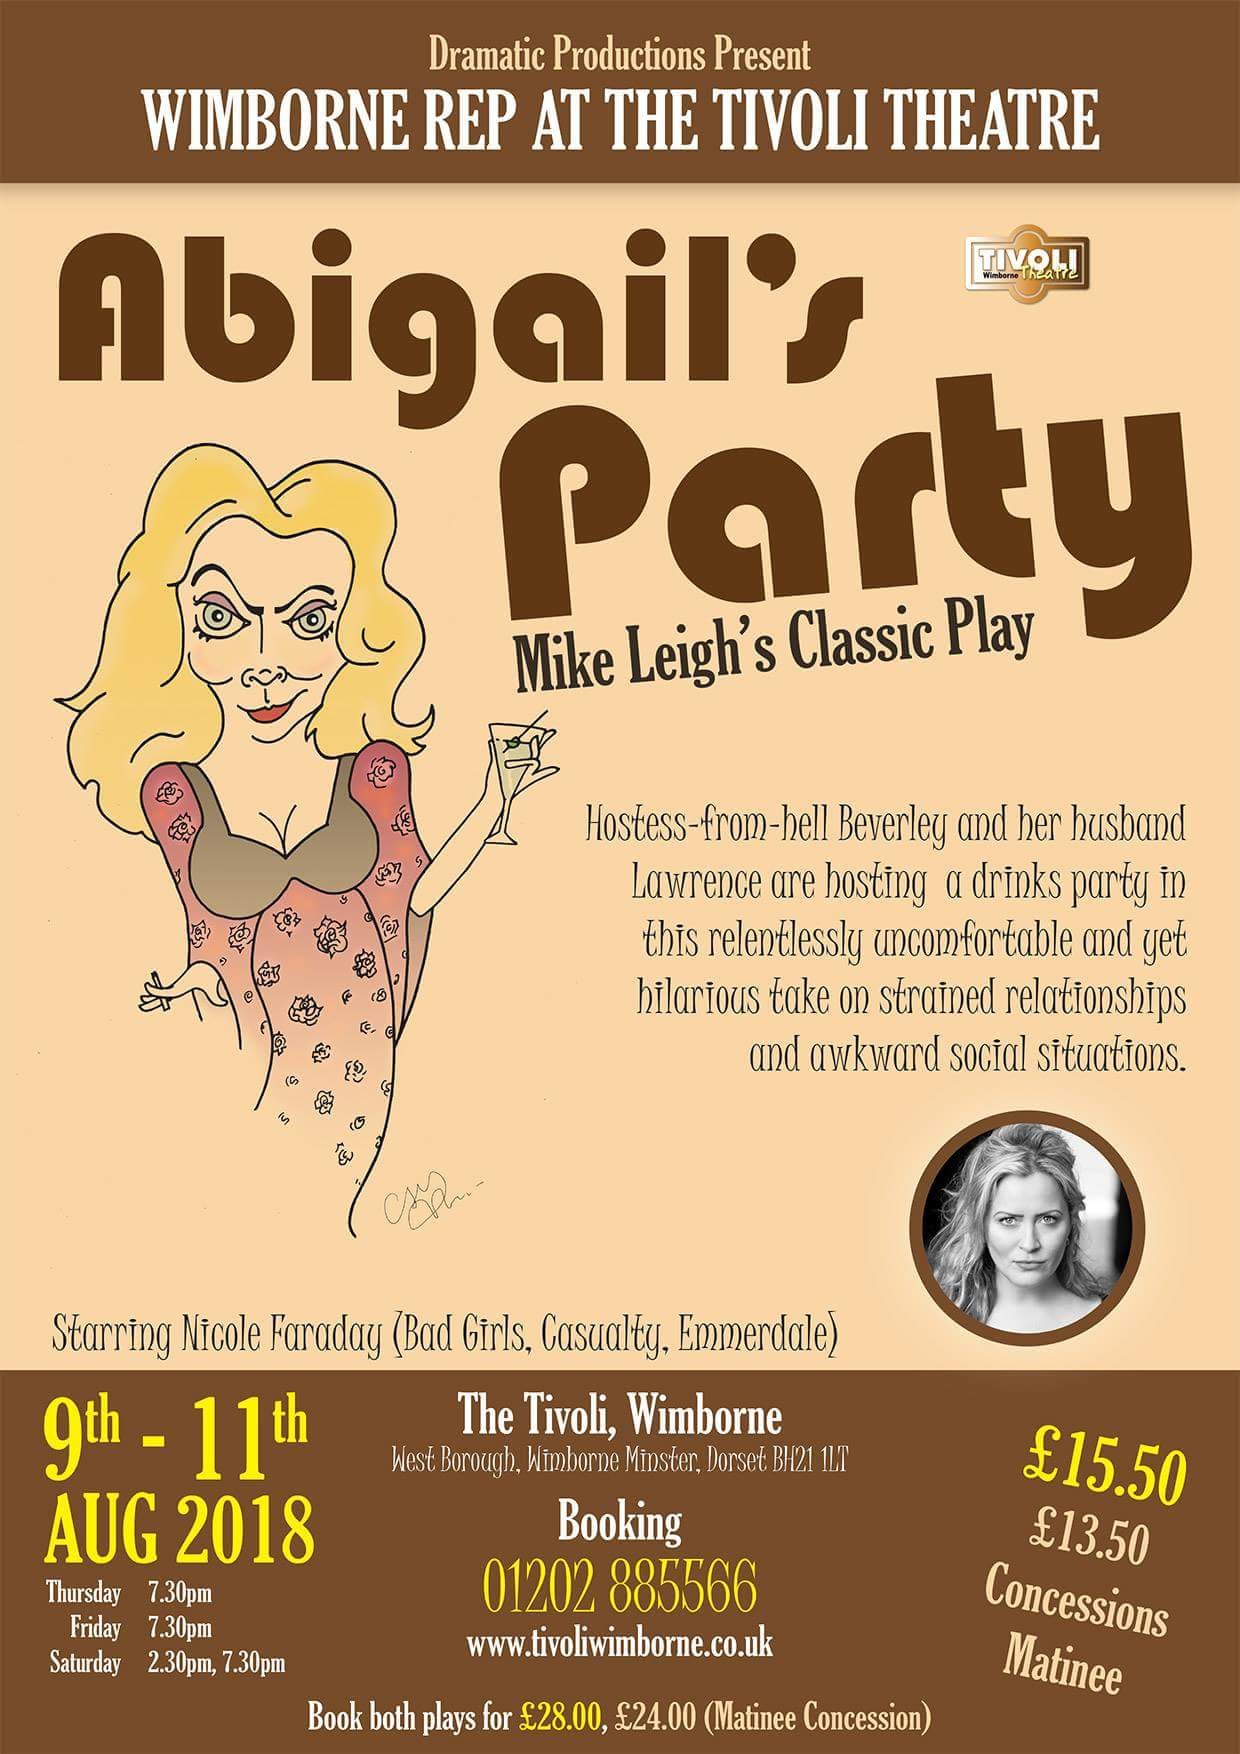 Abigail's Party